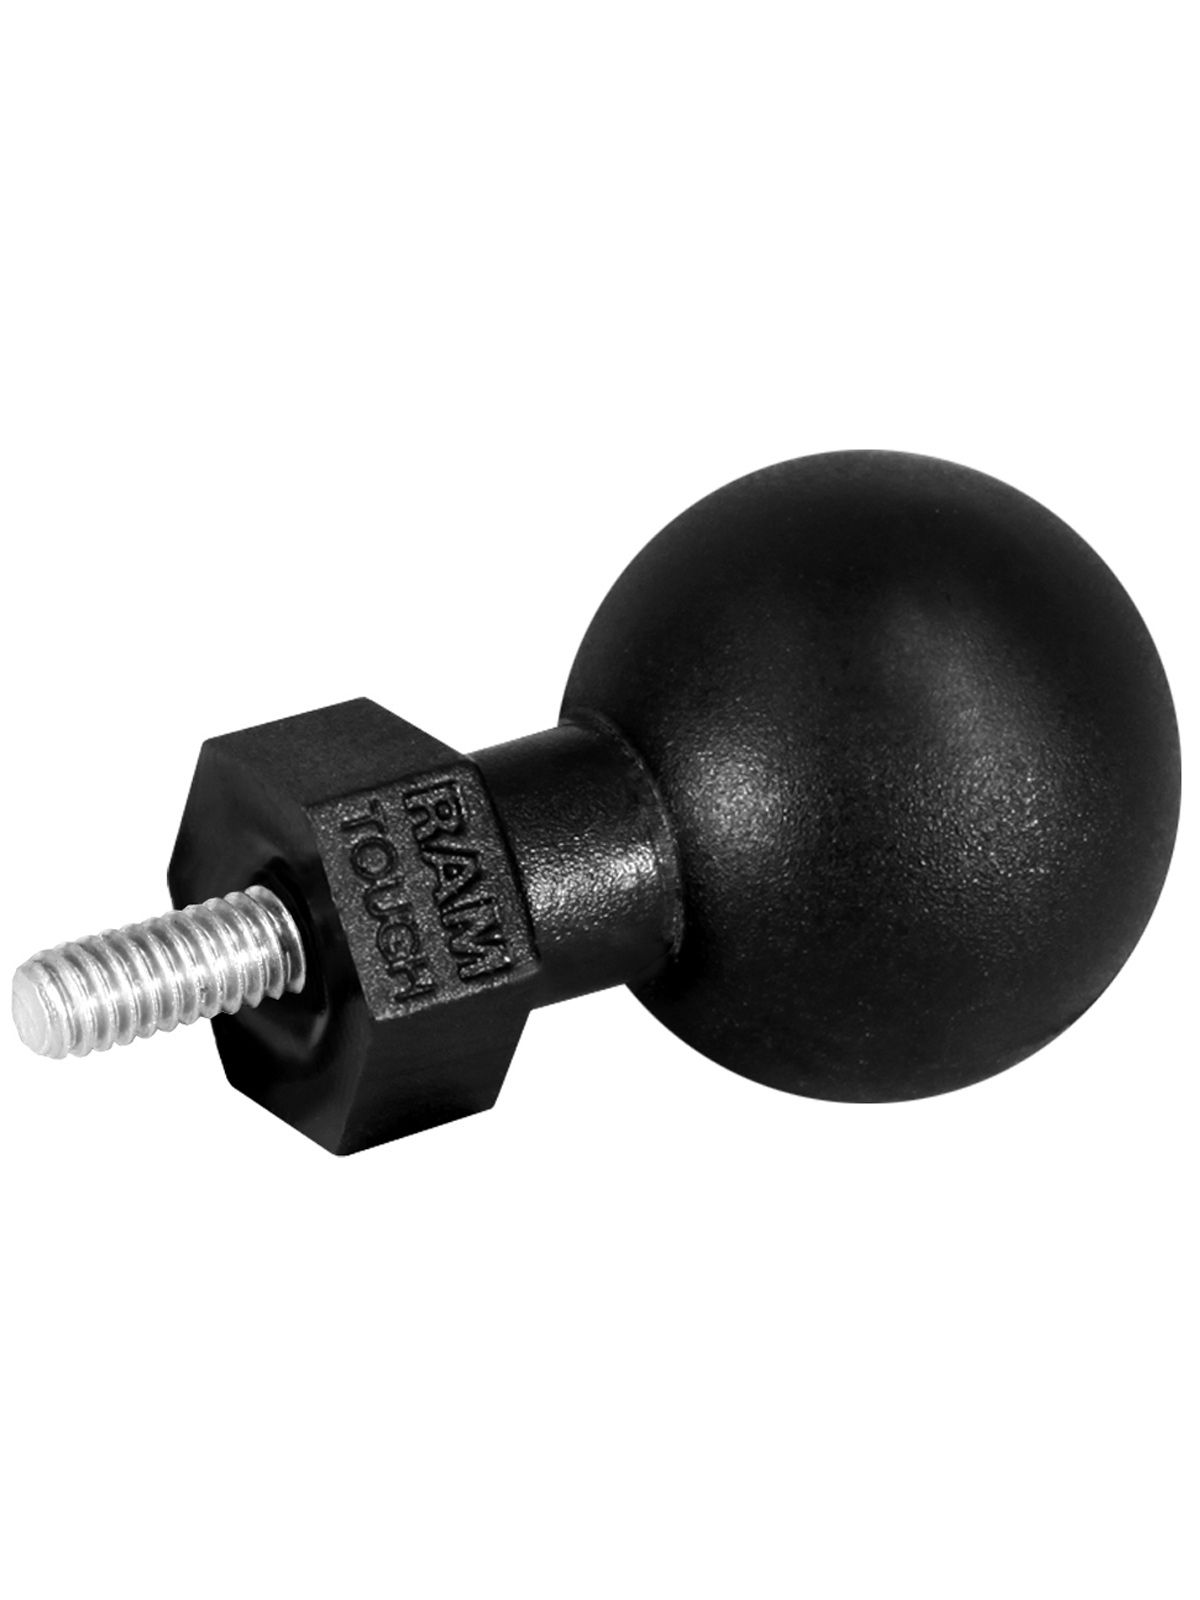 RAM Mounts Tough-Ball mit 5/16"-24 x 9 mm Gewindestift - C-Kugel (1,5 Zoll), im Polybeutel